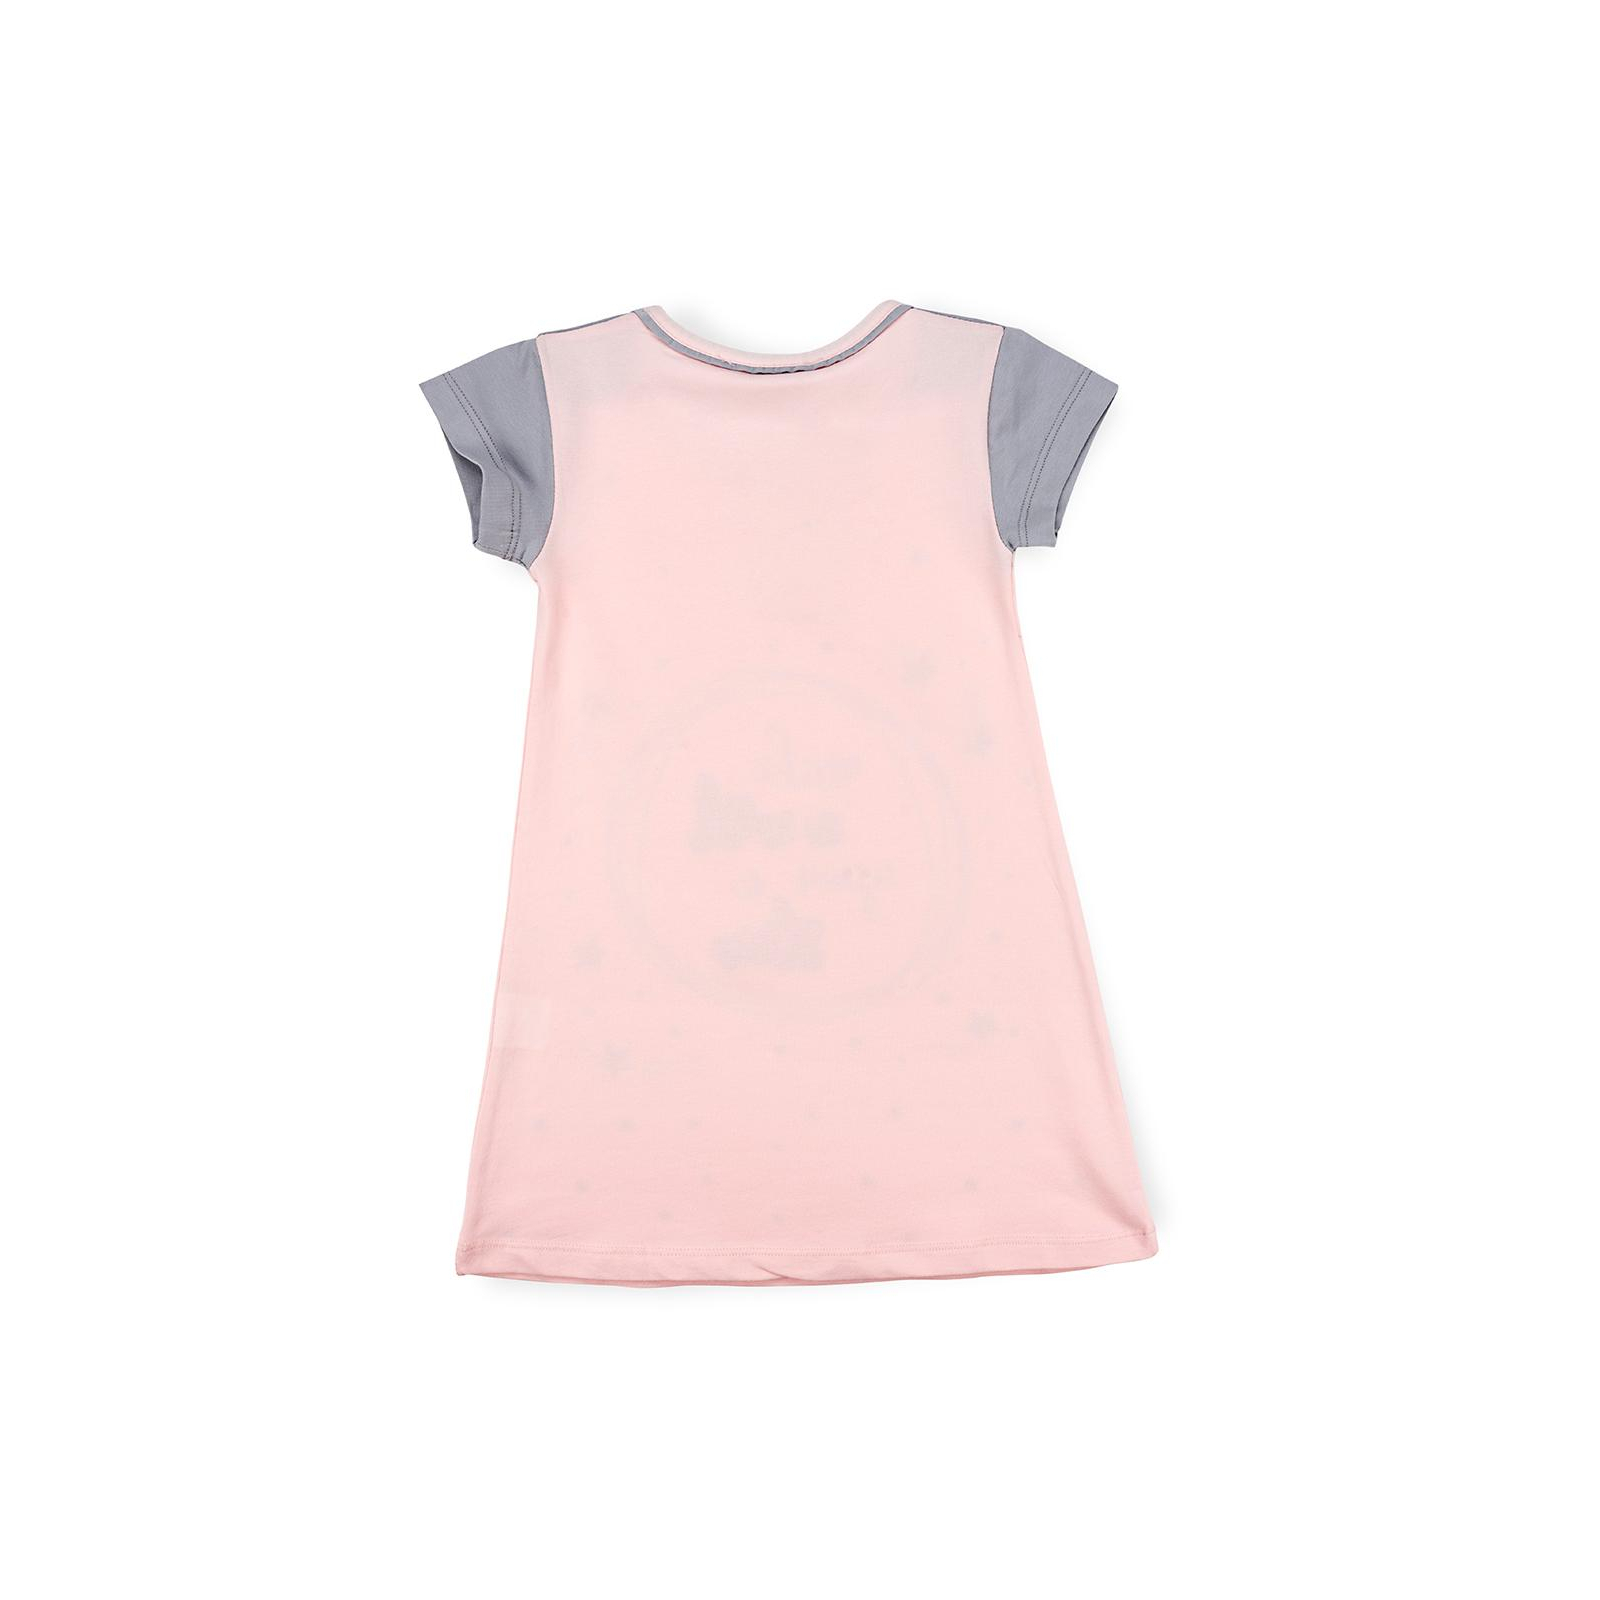 Піжама Matilda сорочка Із зірочкамі (7992-3-122G-pink) зображення 2